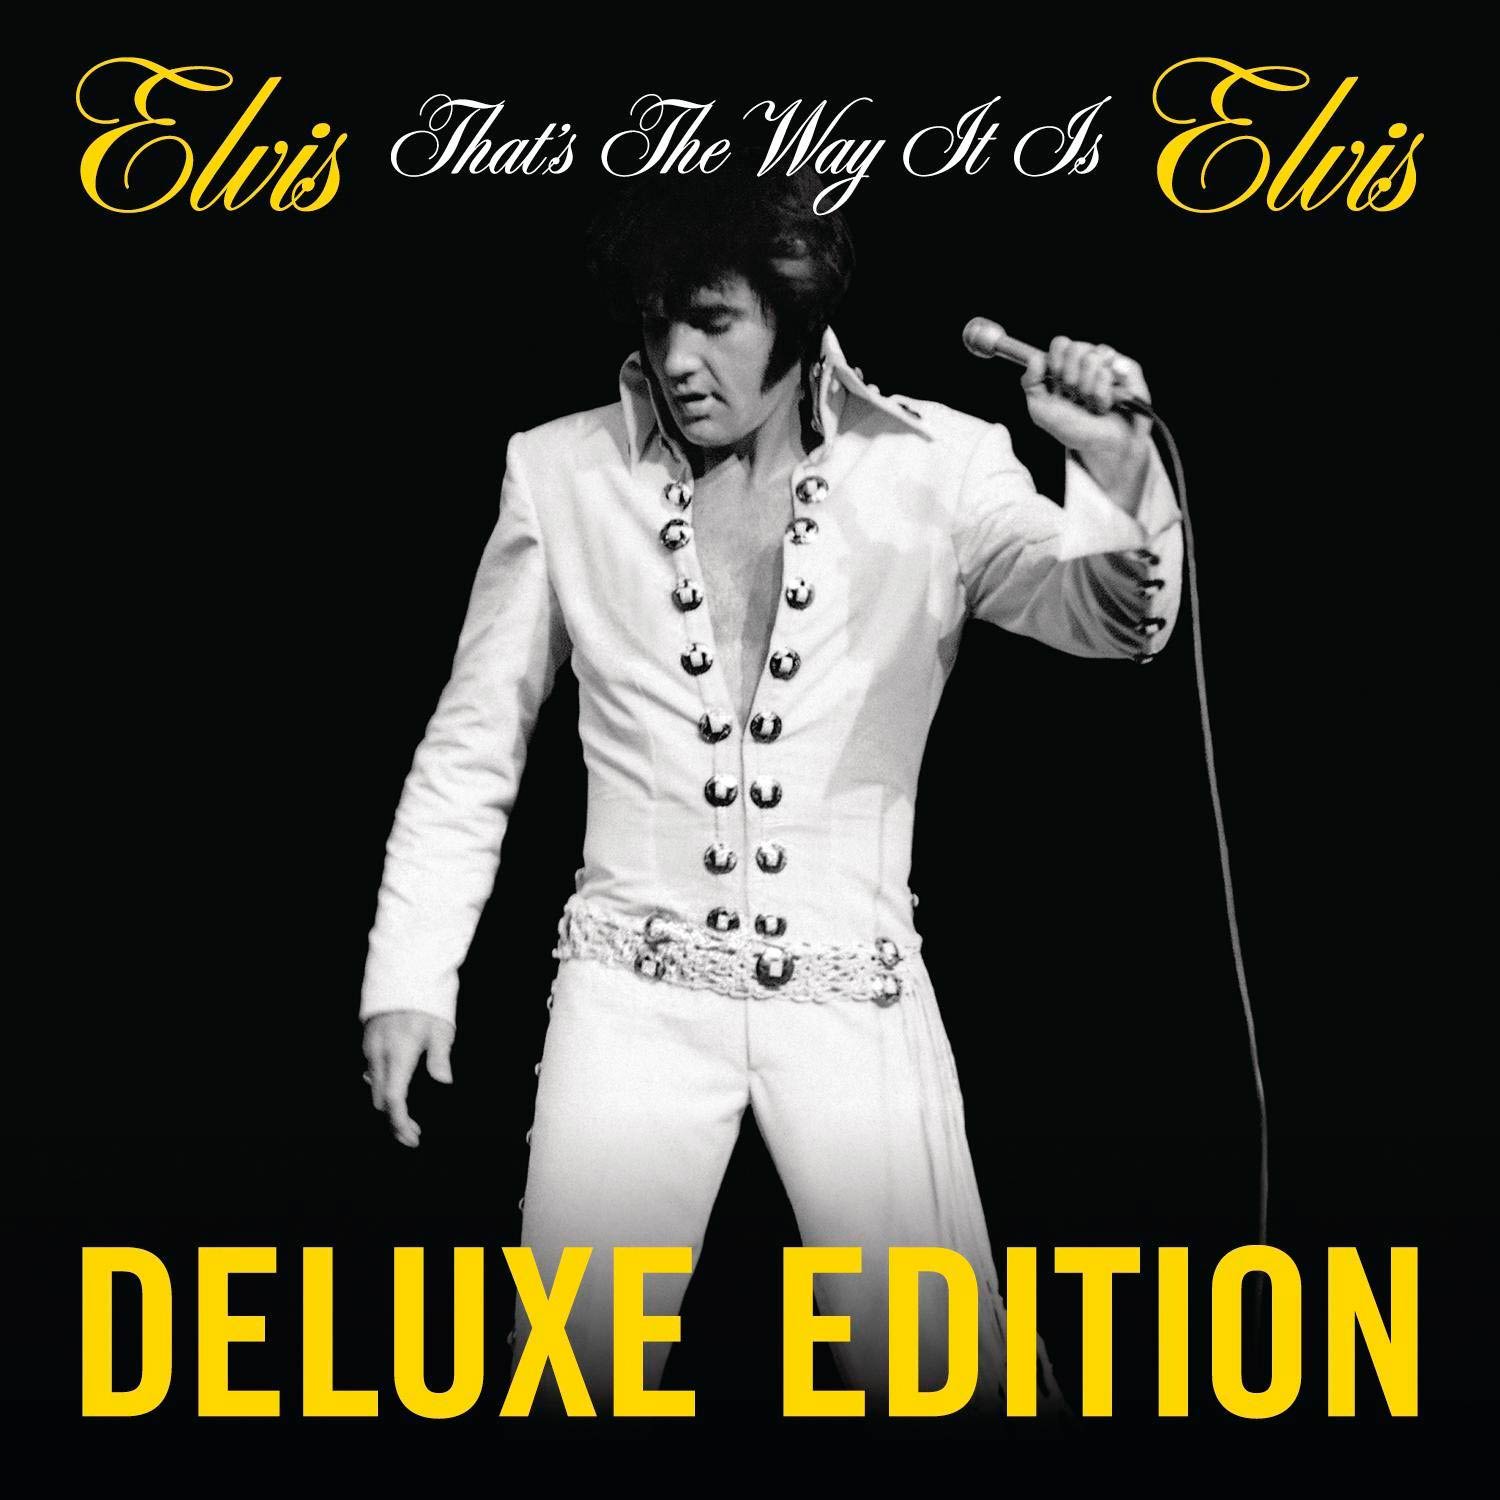 Elvis Presley: That's the way it is (Deluxe edition), la portada del disco